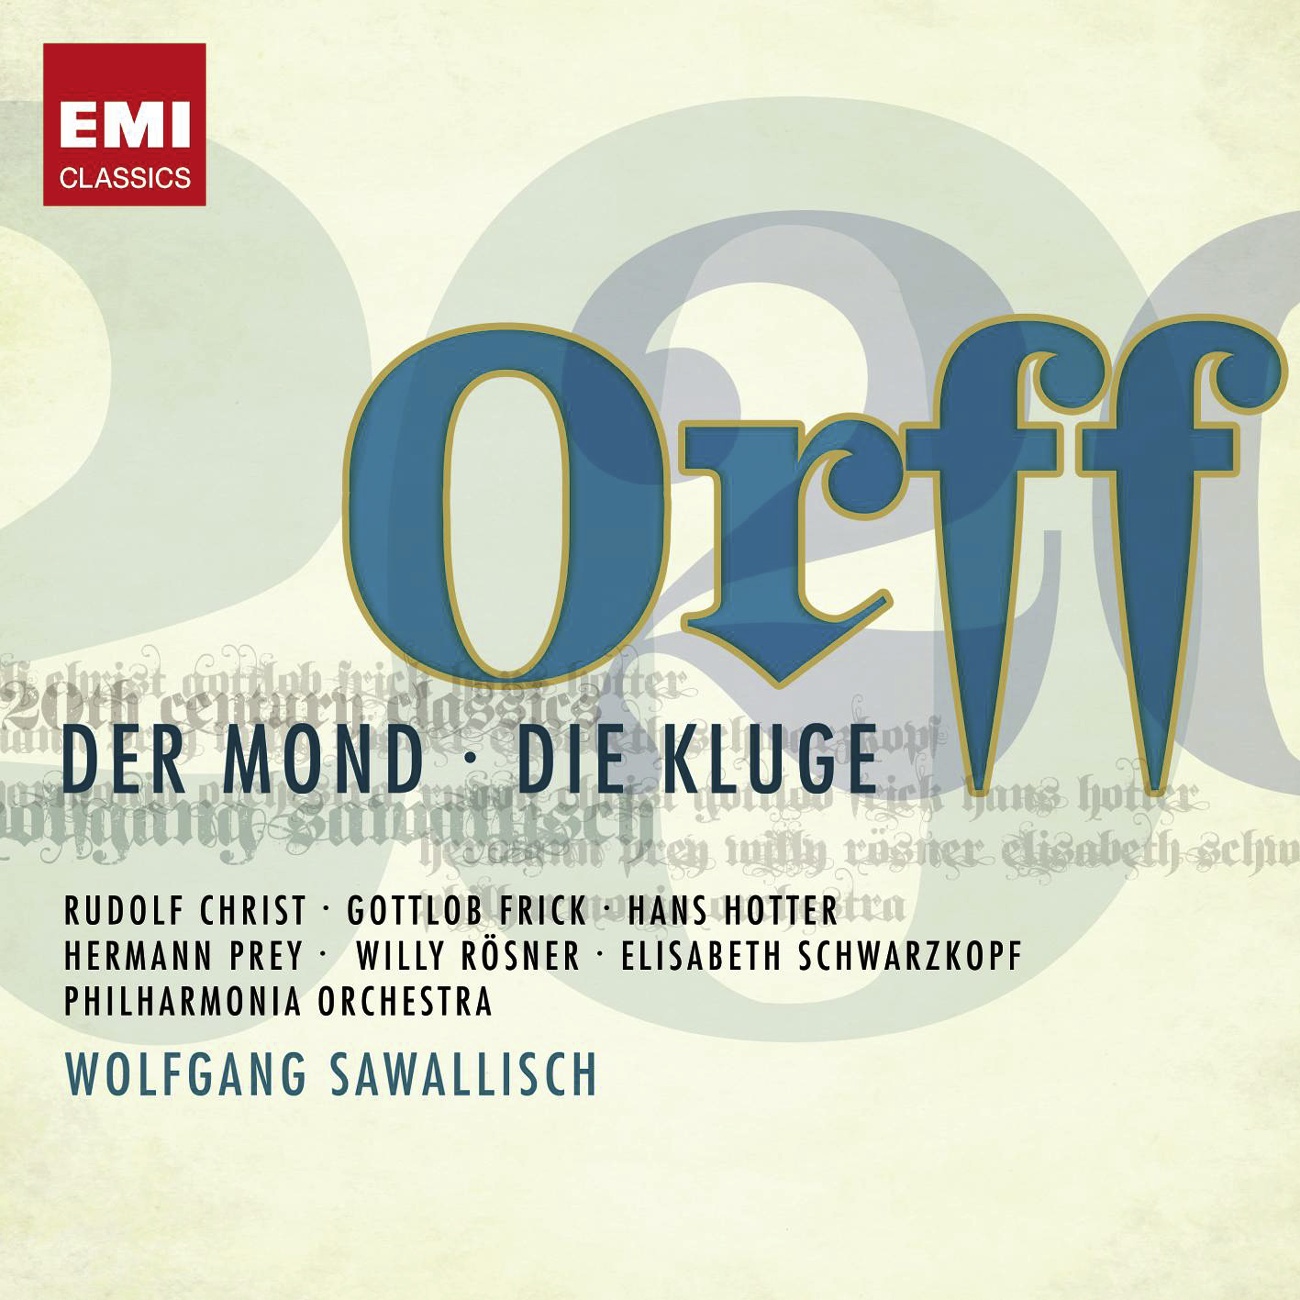 Die Kluge (1998 Digital Remaster), Scene 11: Komm da heraus, der König läßt dich frei (Kerkermeister/Eselmann)